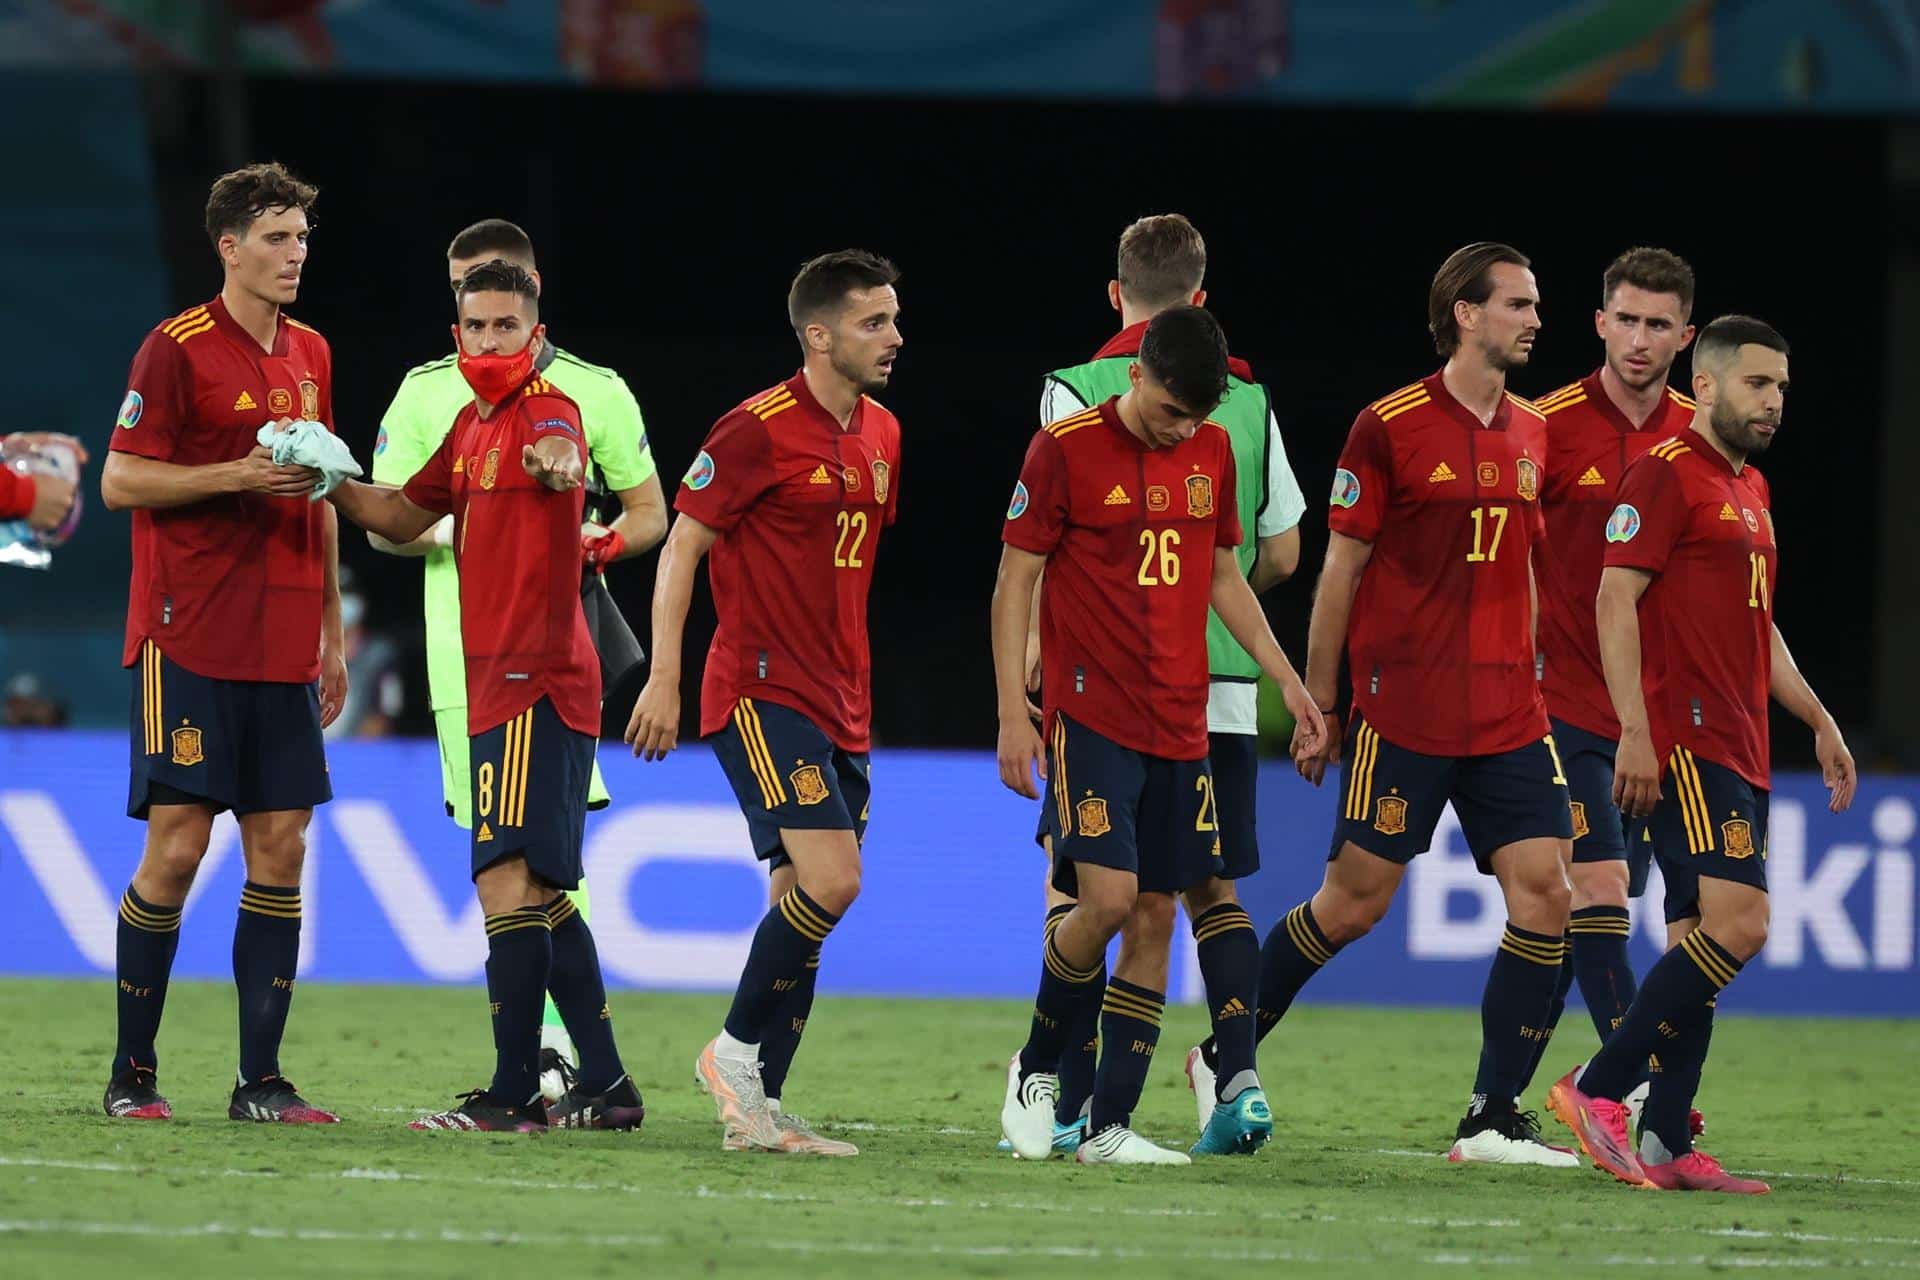 Los jugadores de la selección española, cabizbajos tras el empate frente a Polonia.